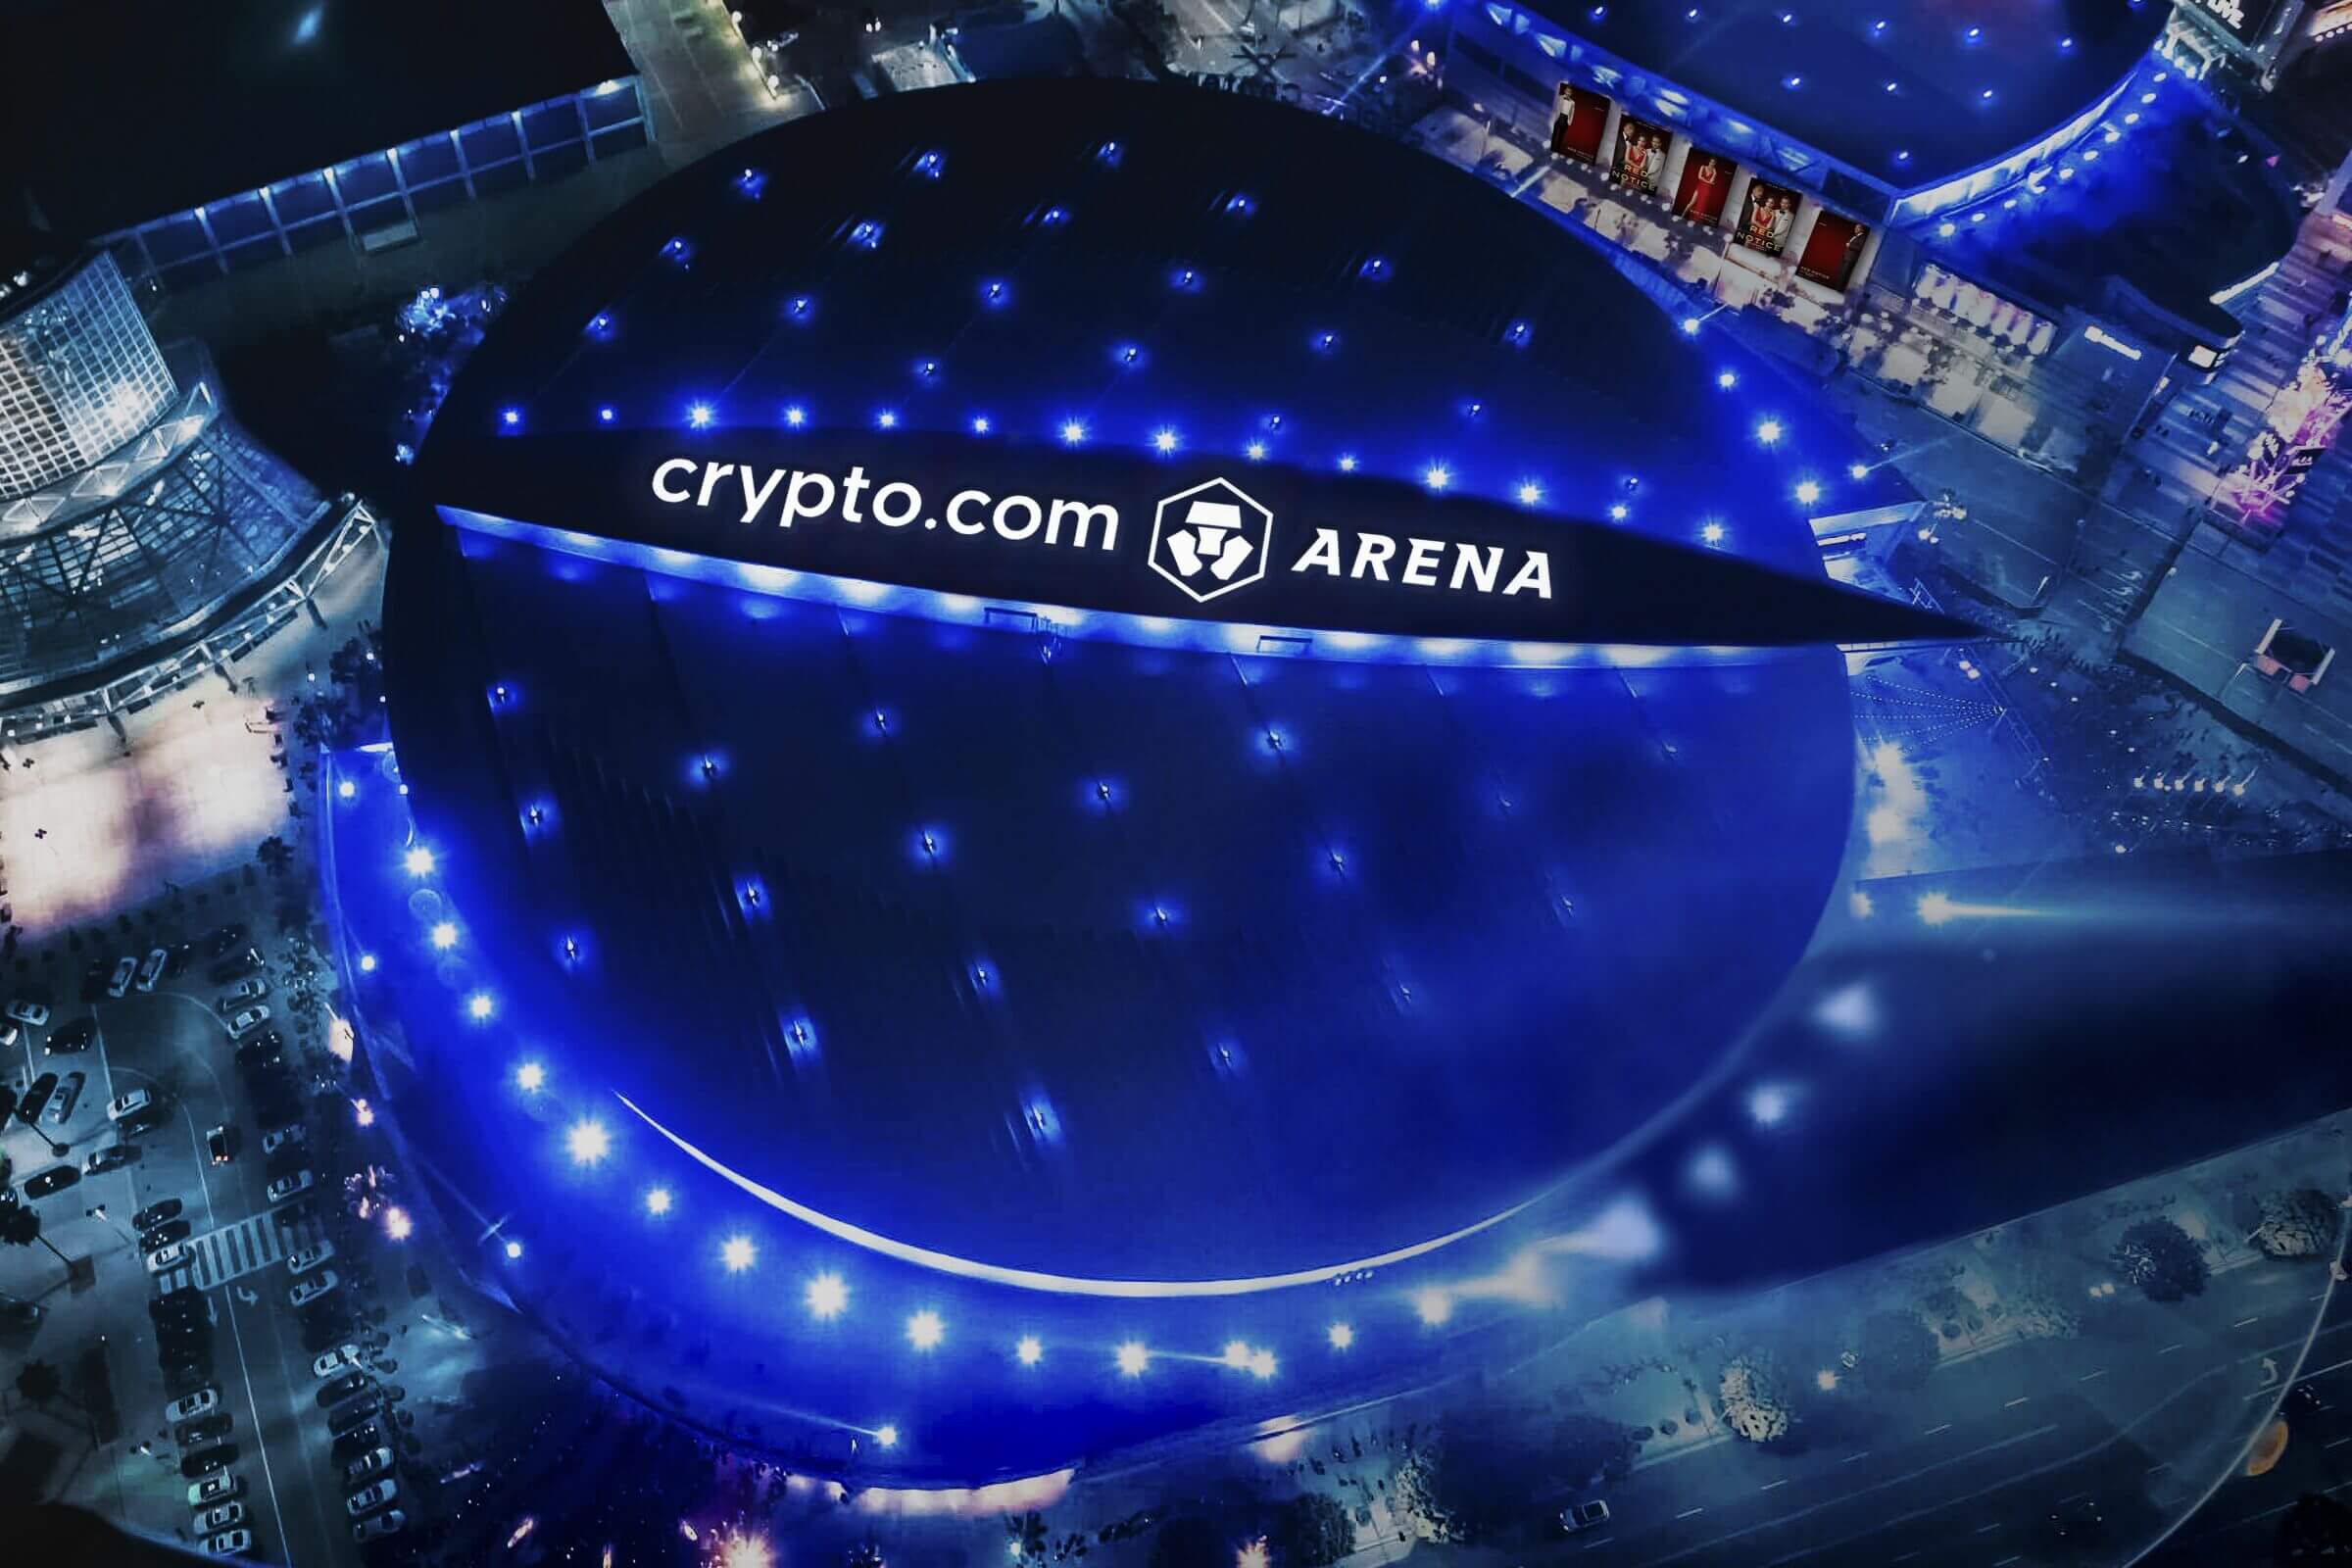 Криптобиржа Crypto.com. Логотип стадиона Crypto.com Arena. Фото.